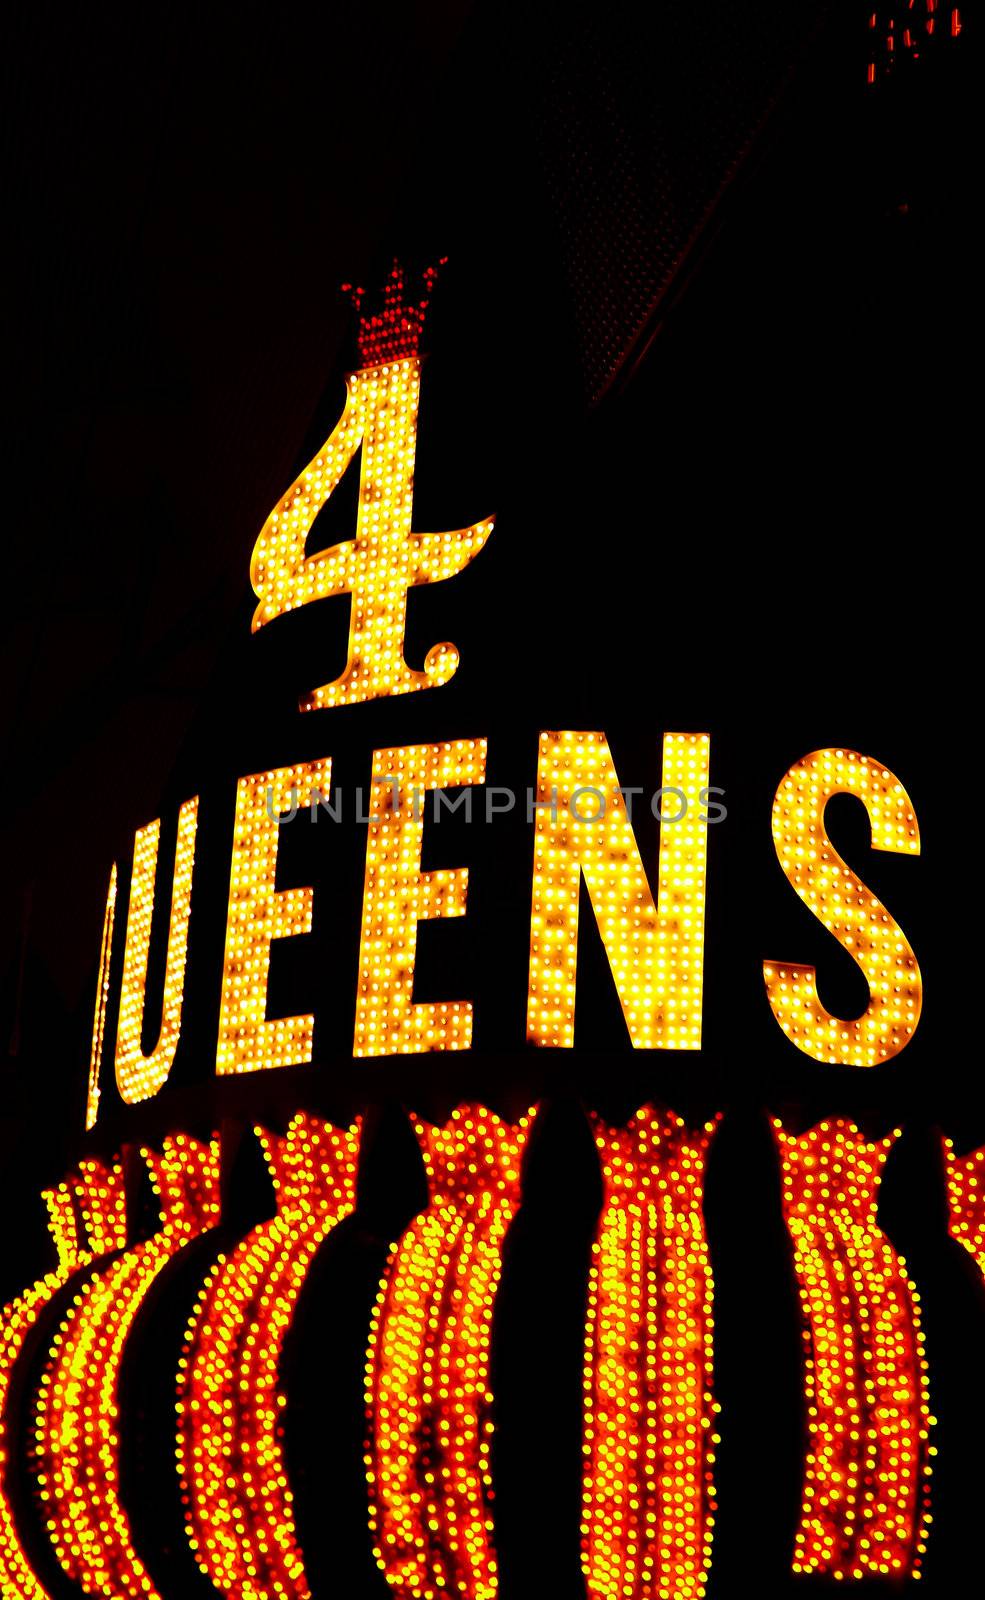 4 queens